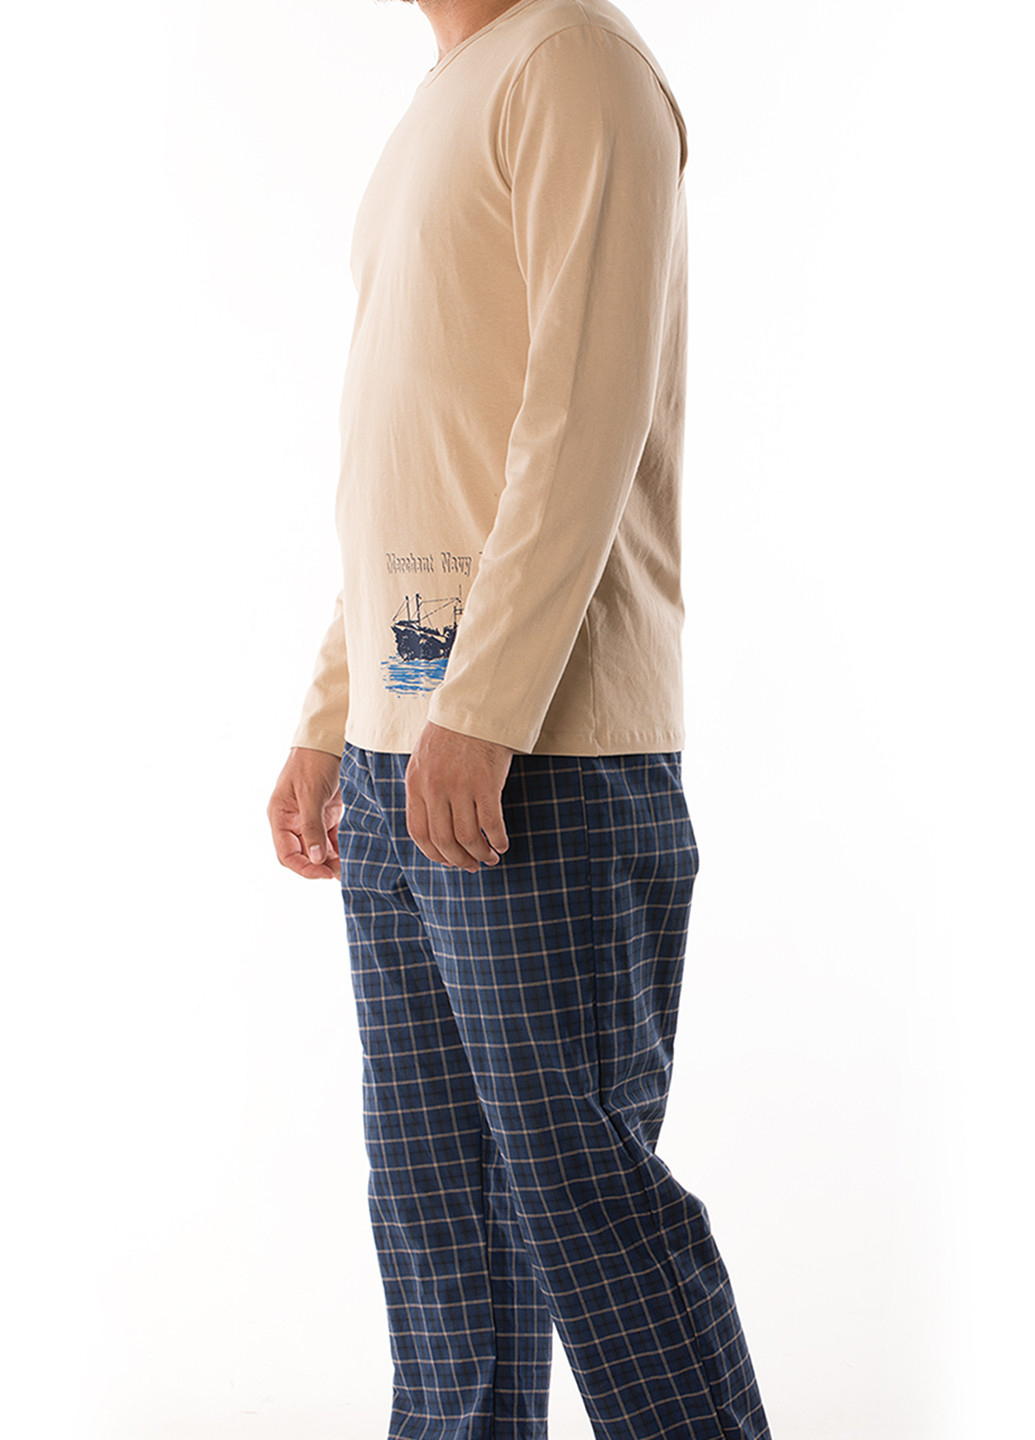 Пижама (лонгслив, брюки) DoReMi лонгслив + брюки клетка бежевая домашняя хлопок